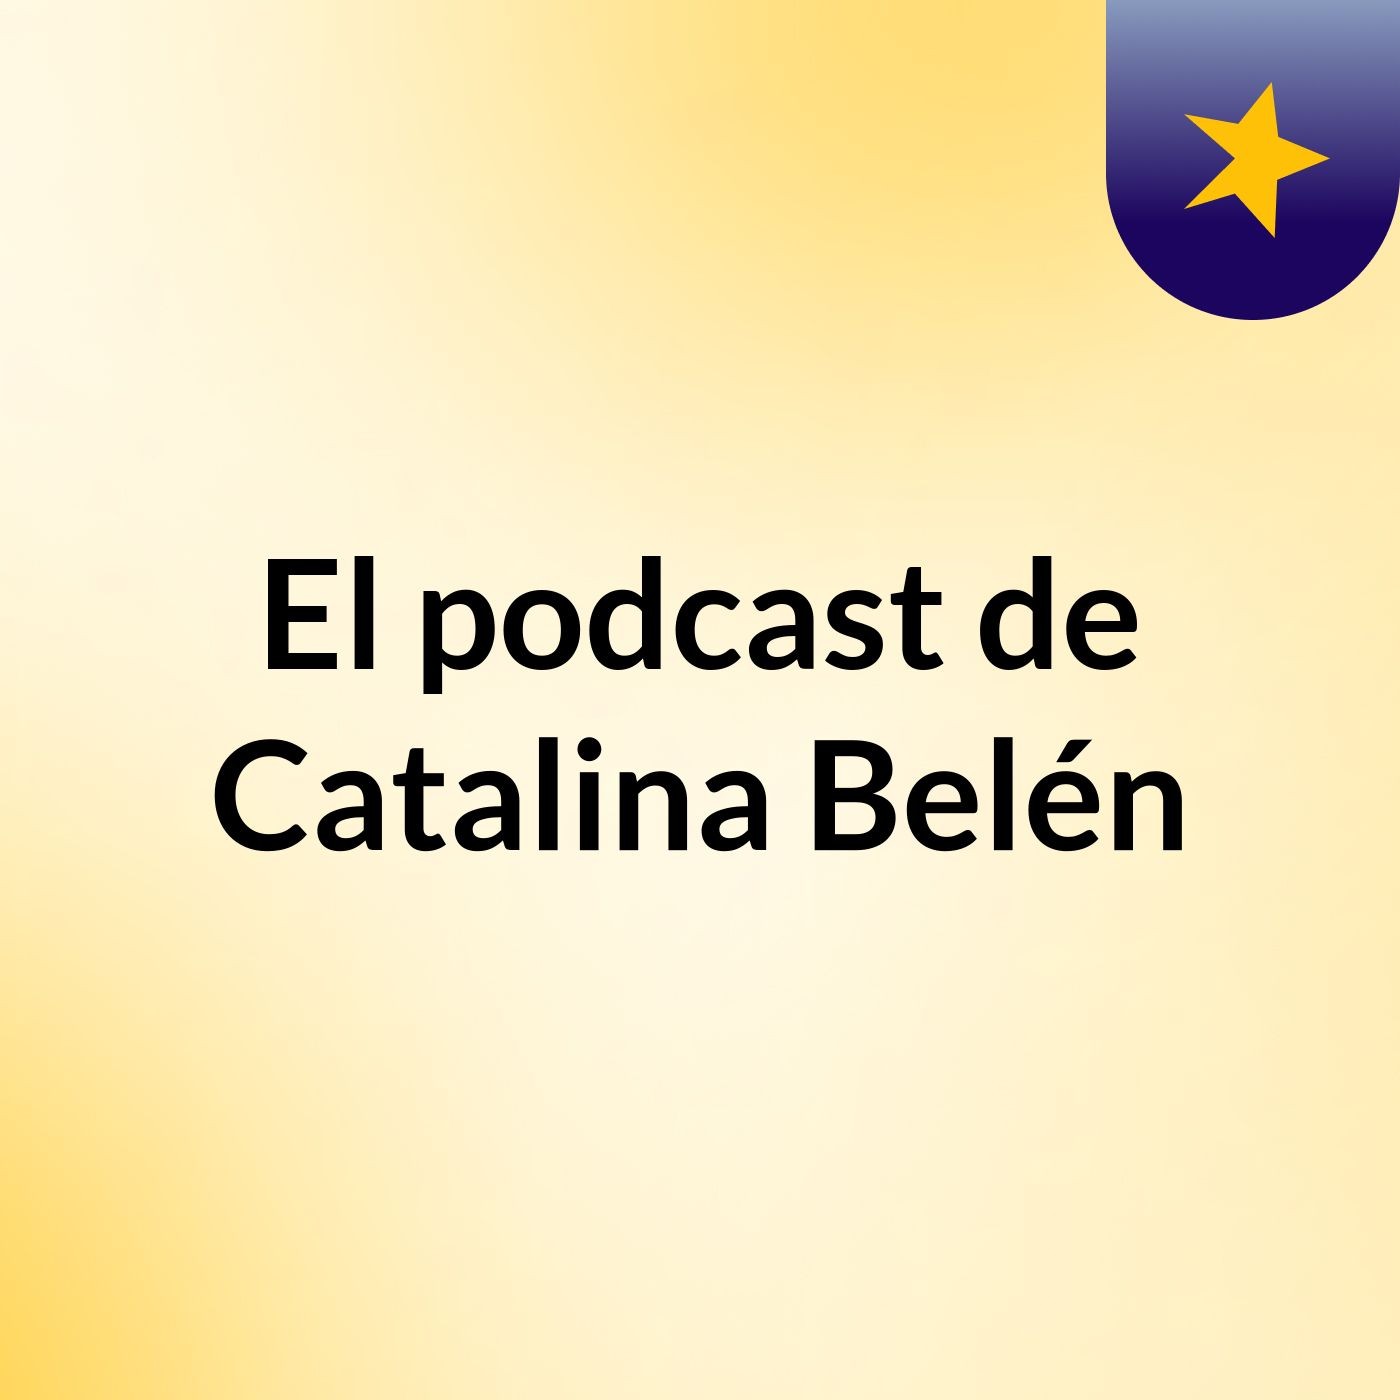 Episodio 15 - El podcast de Catalina Belén